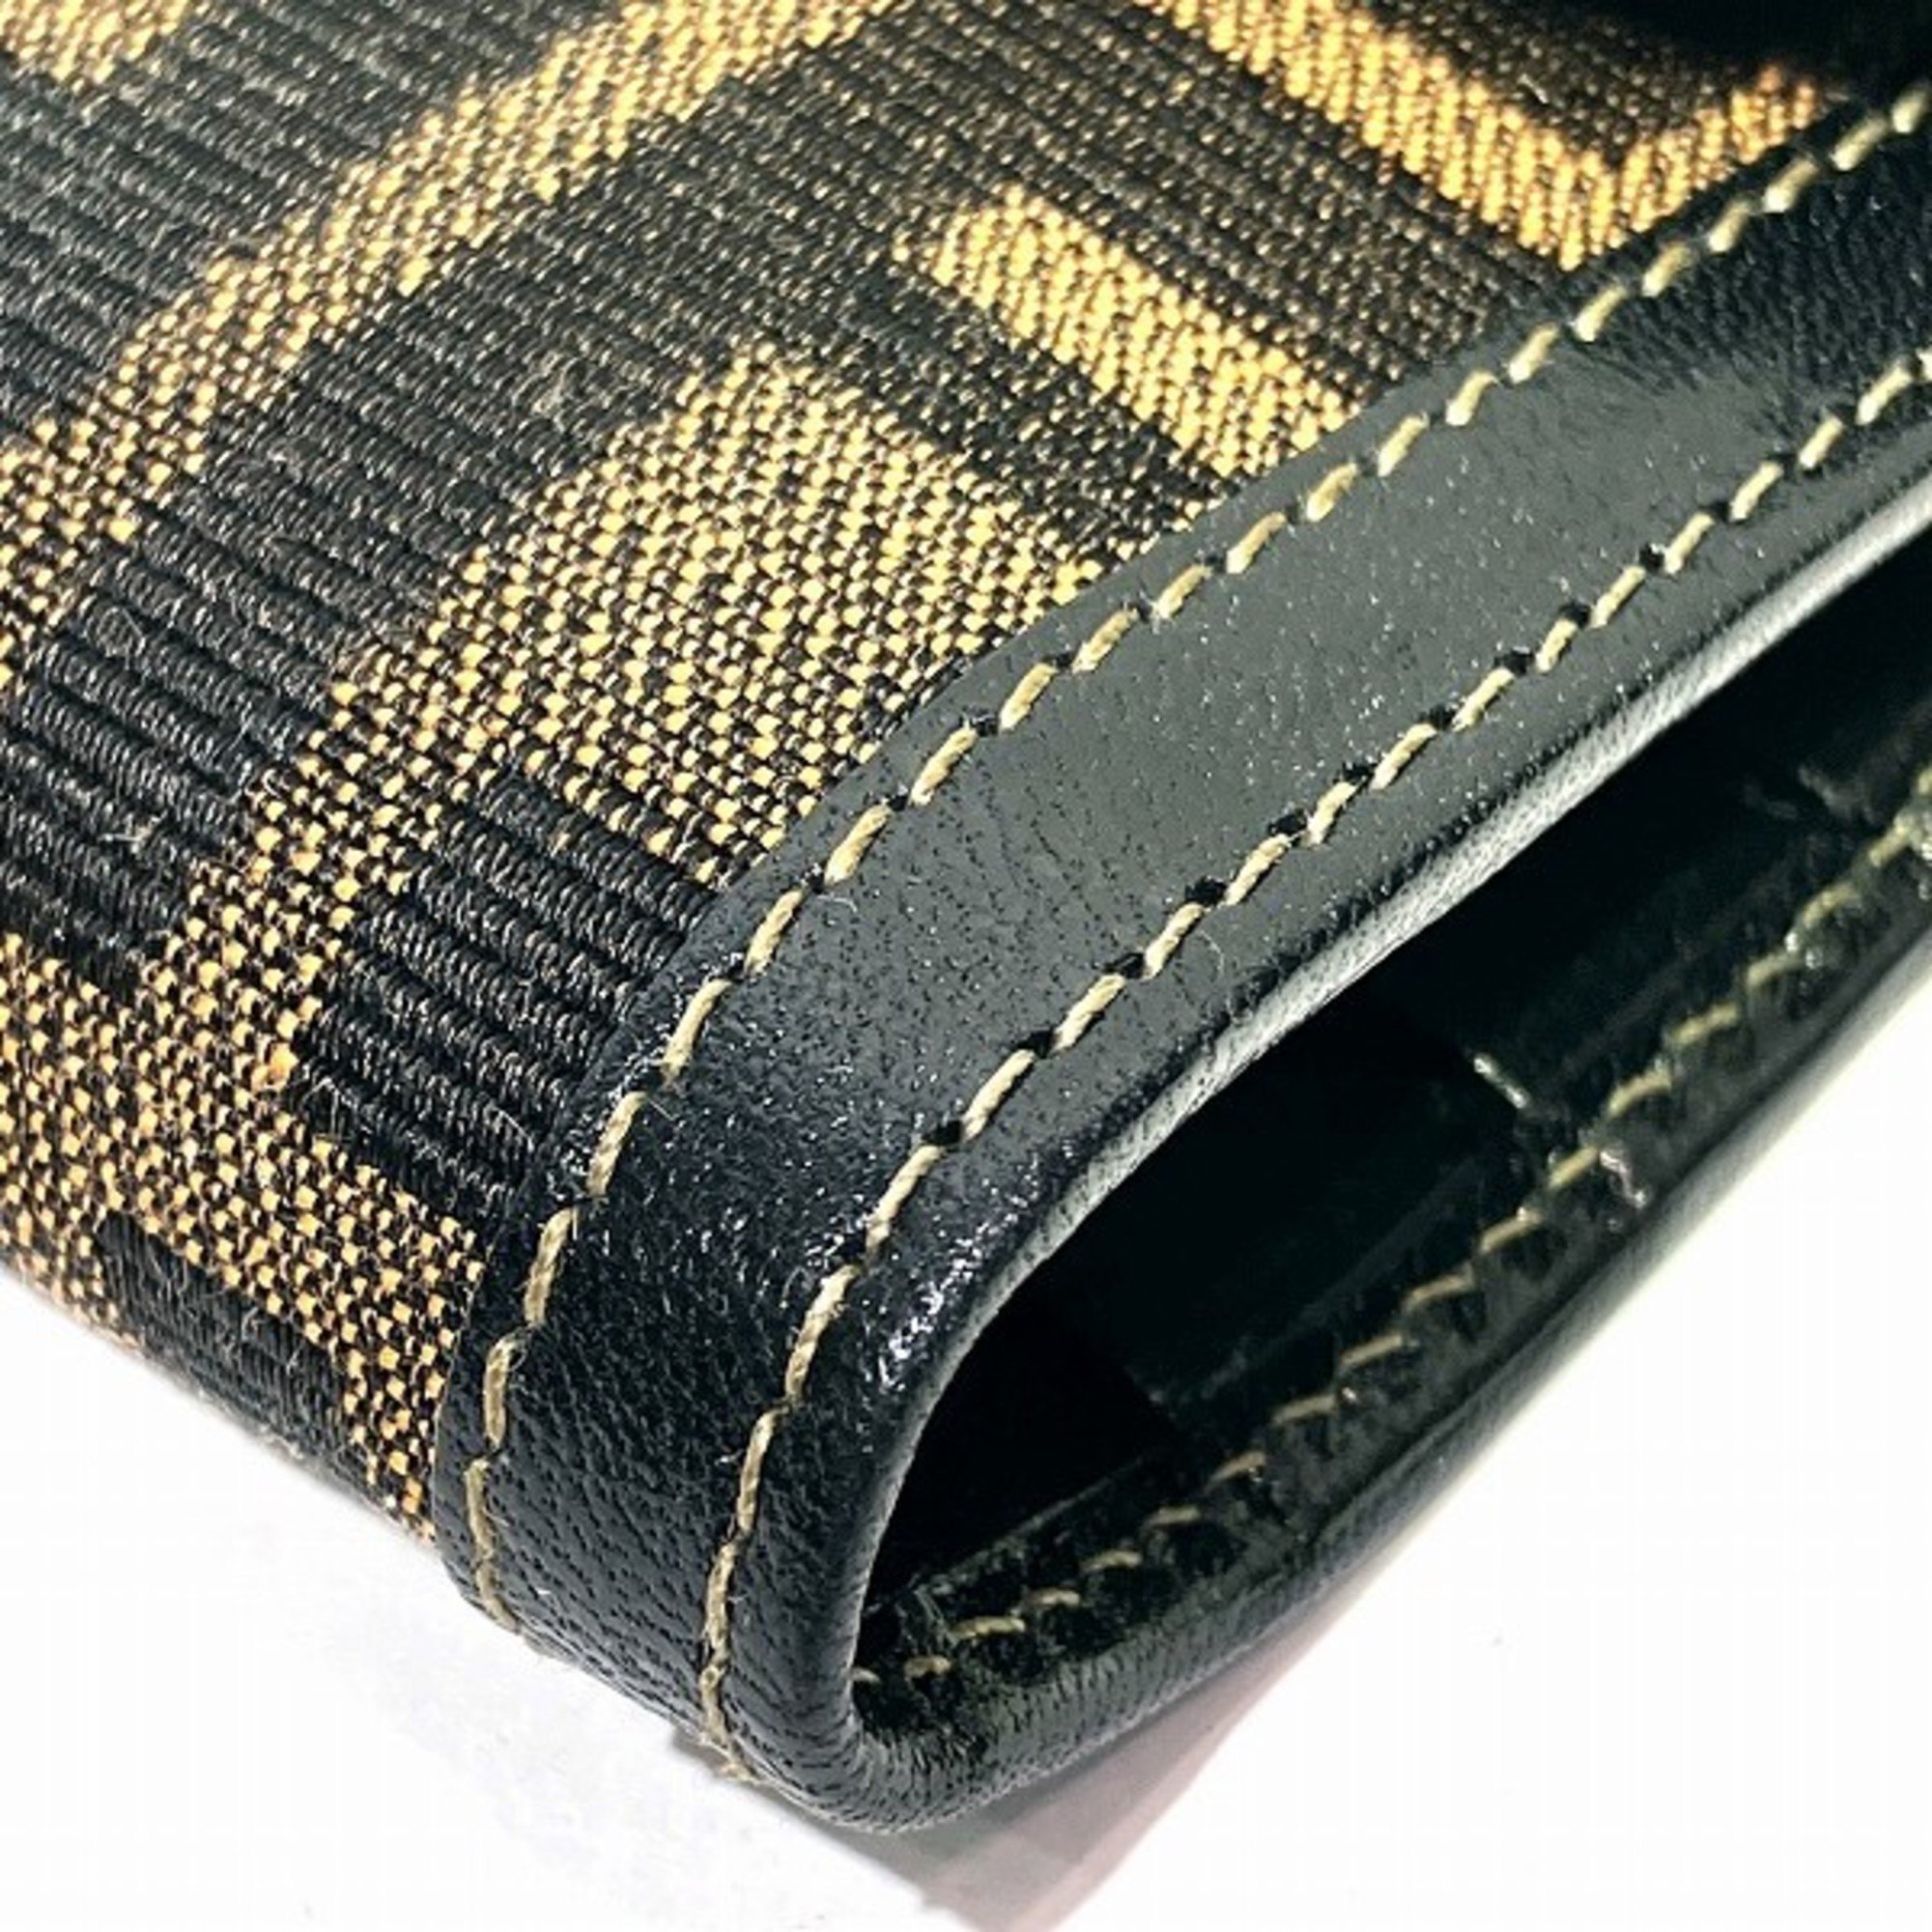 FENDI Zucca pattern 2804-01339・079 Long wallet, bi-fold wallet for women